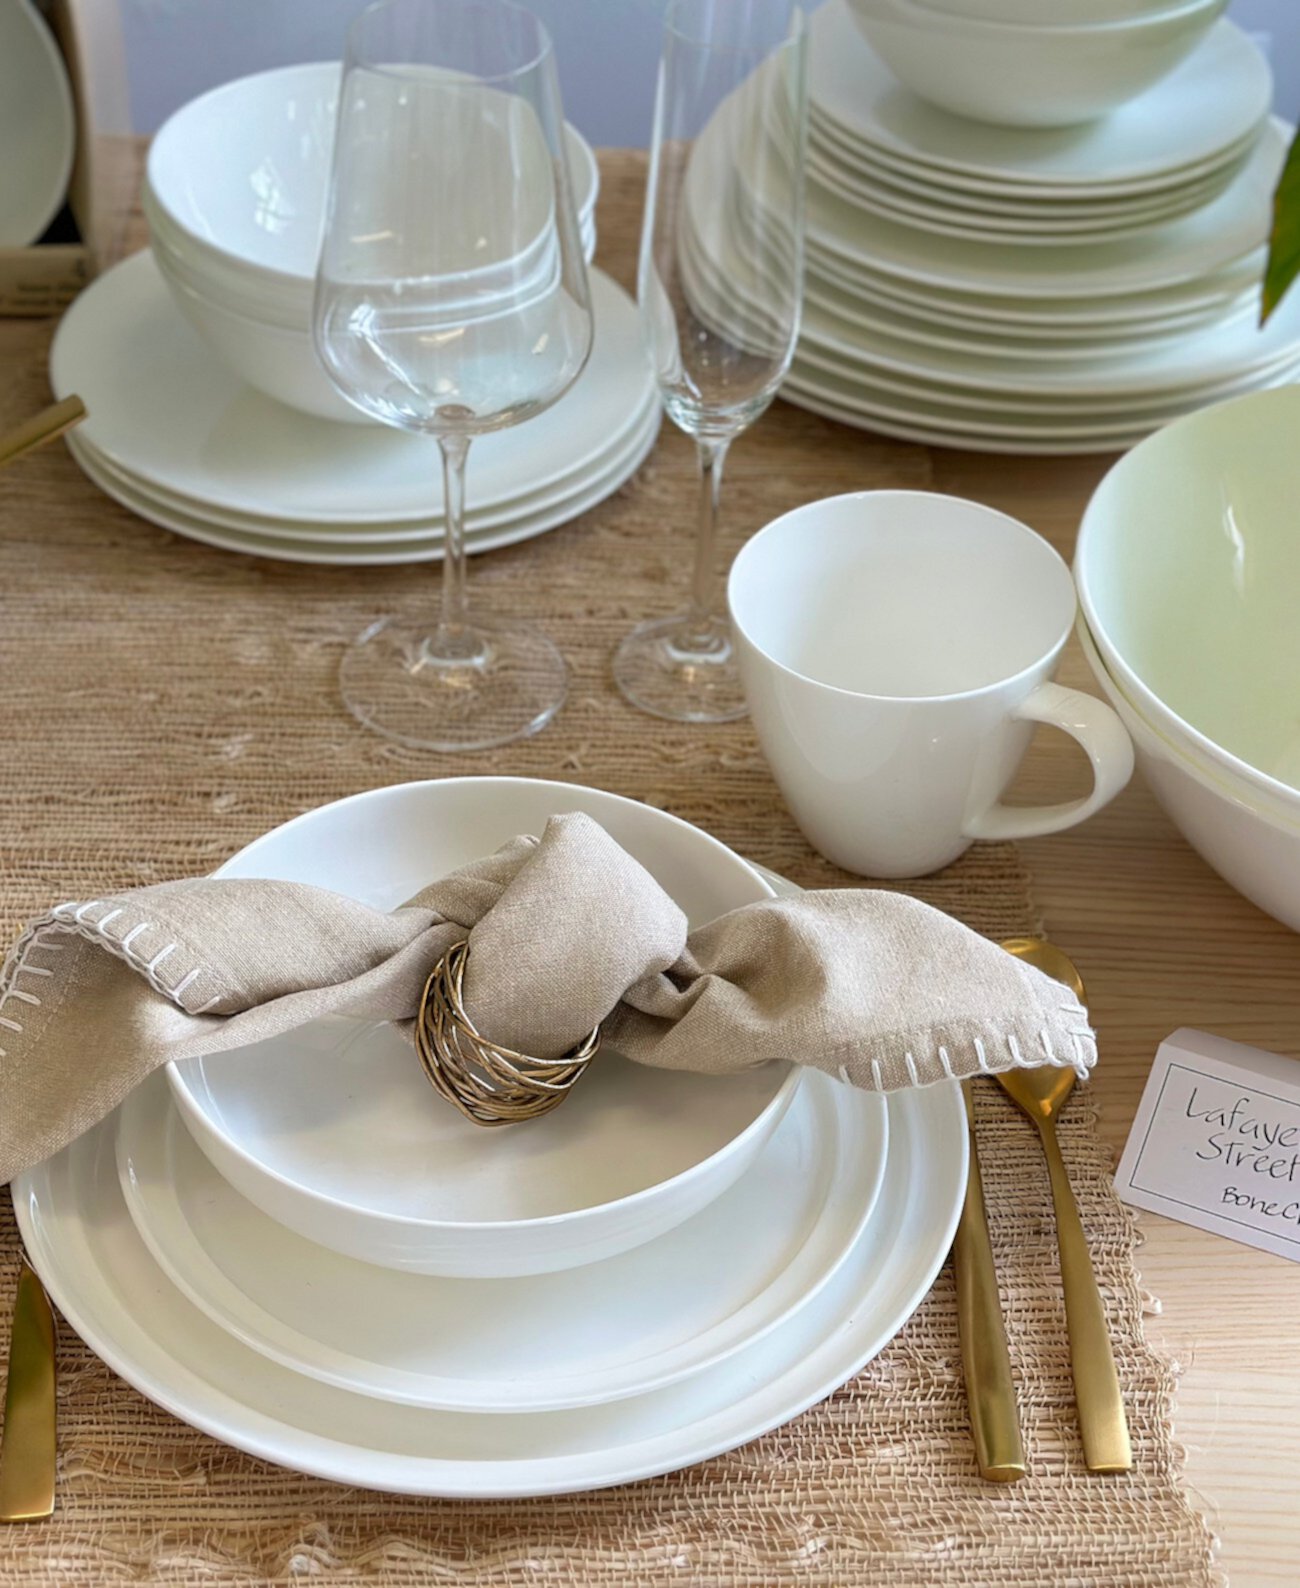 Lafayette St. Набор столовой посуды из тонкого костяного фарфора, 12 предметов, сервиз на 4 персоны Euro Ceramica